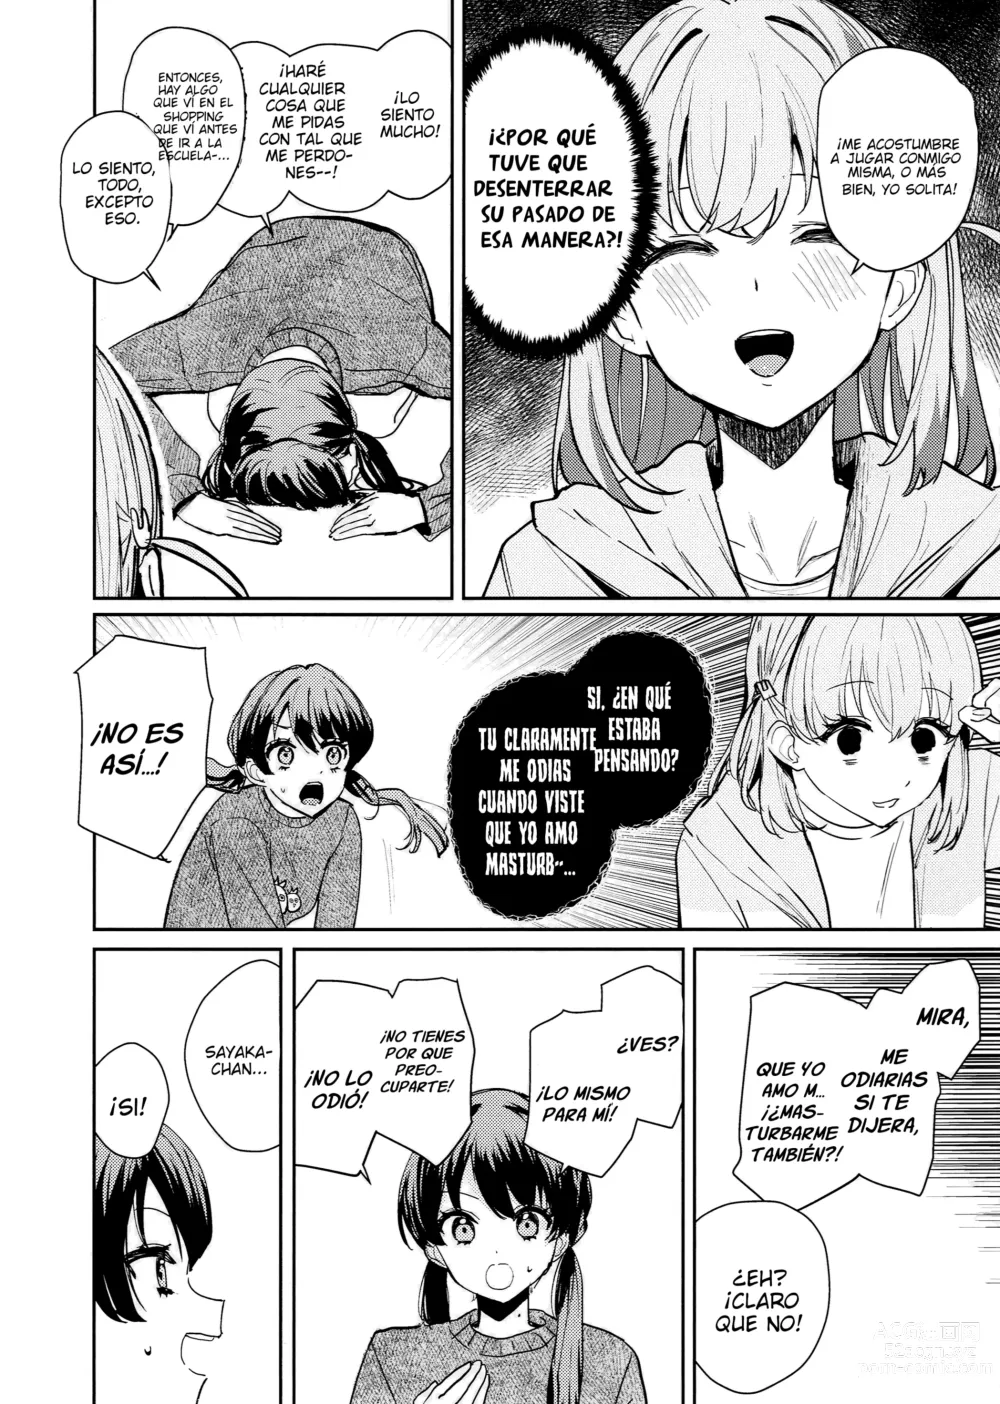 Page 7 of doujinshi Paradoja de Sentimiento